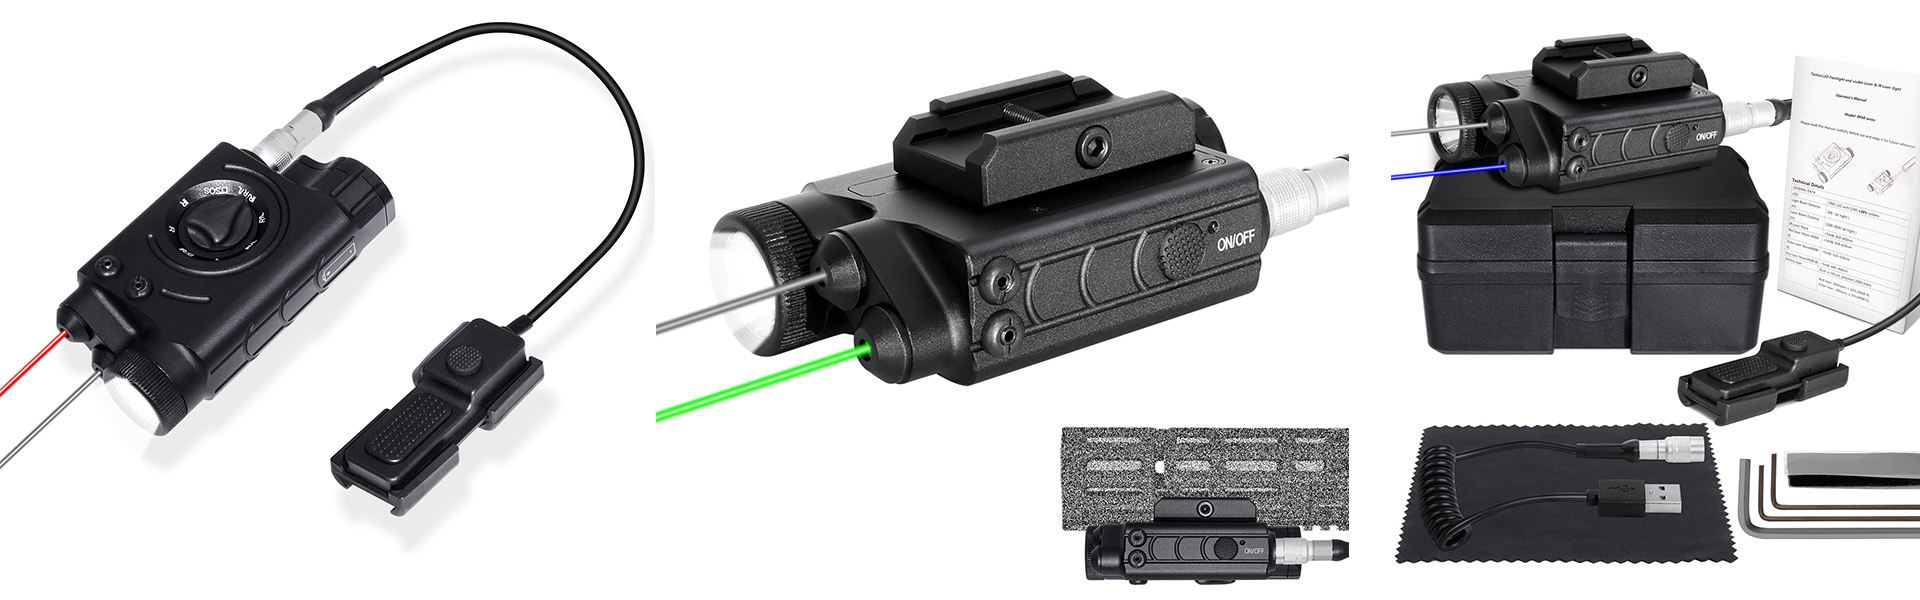 1200 Lumens Flashlight Green/IR Laser Sight Combo Fit Night Vision